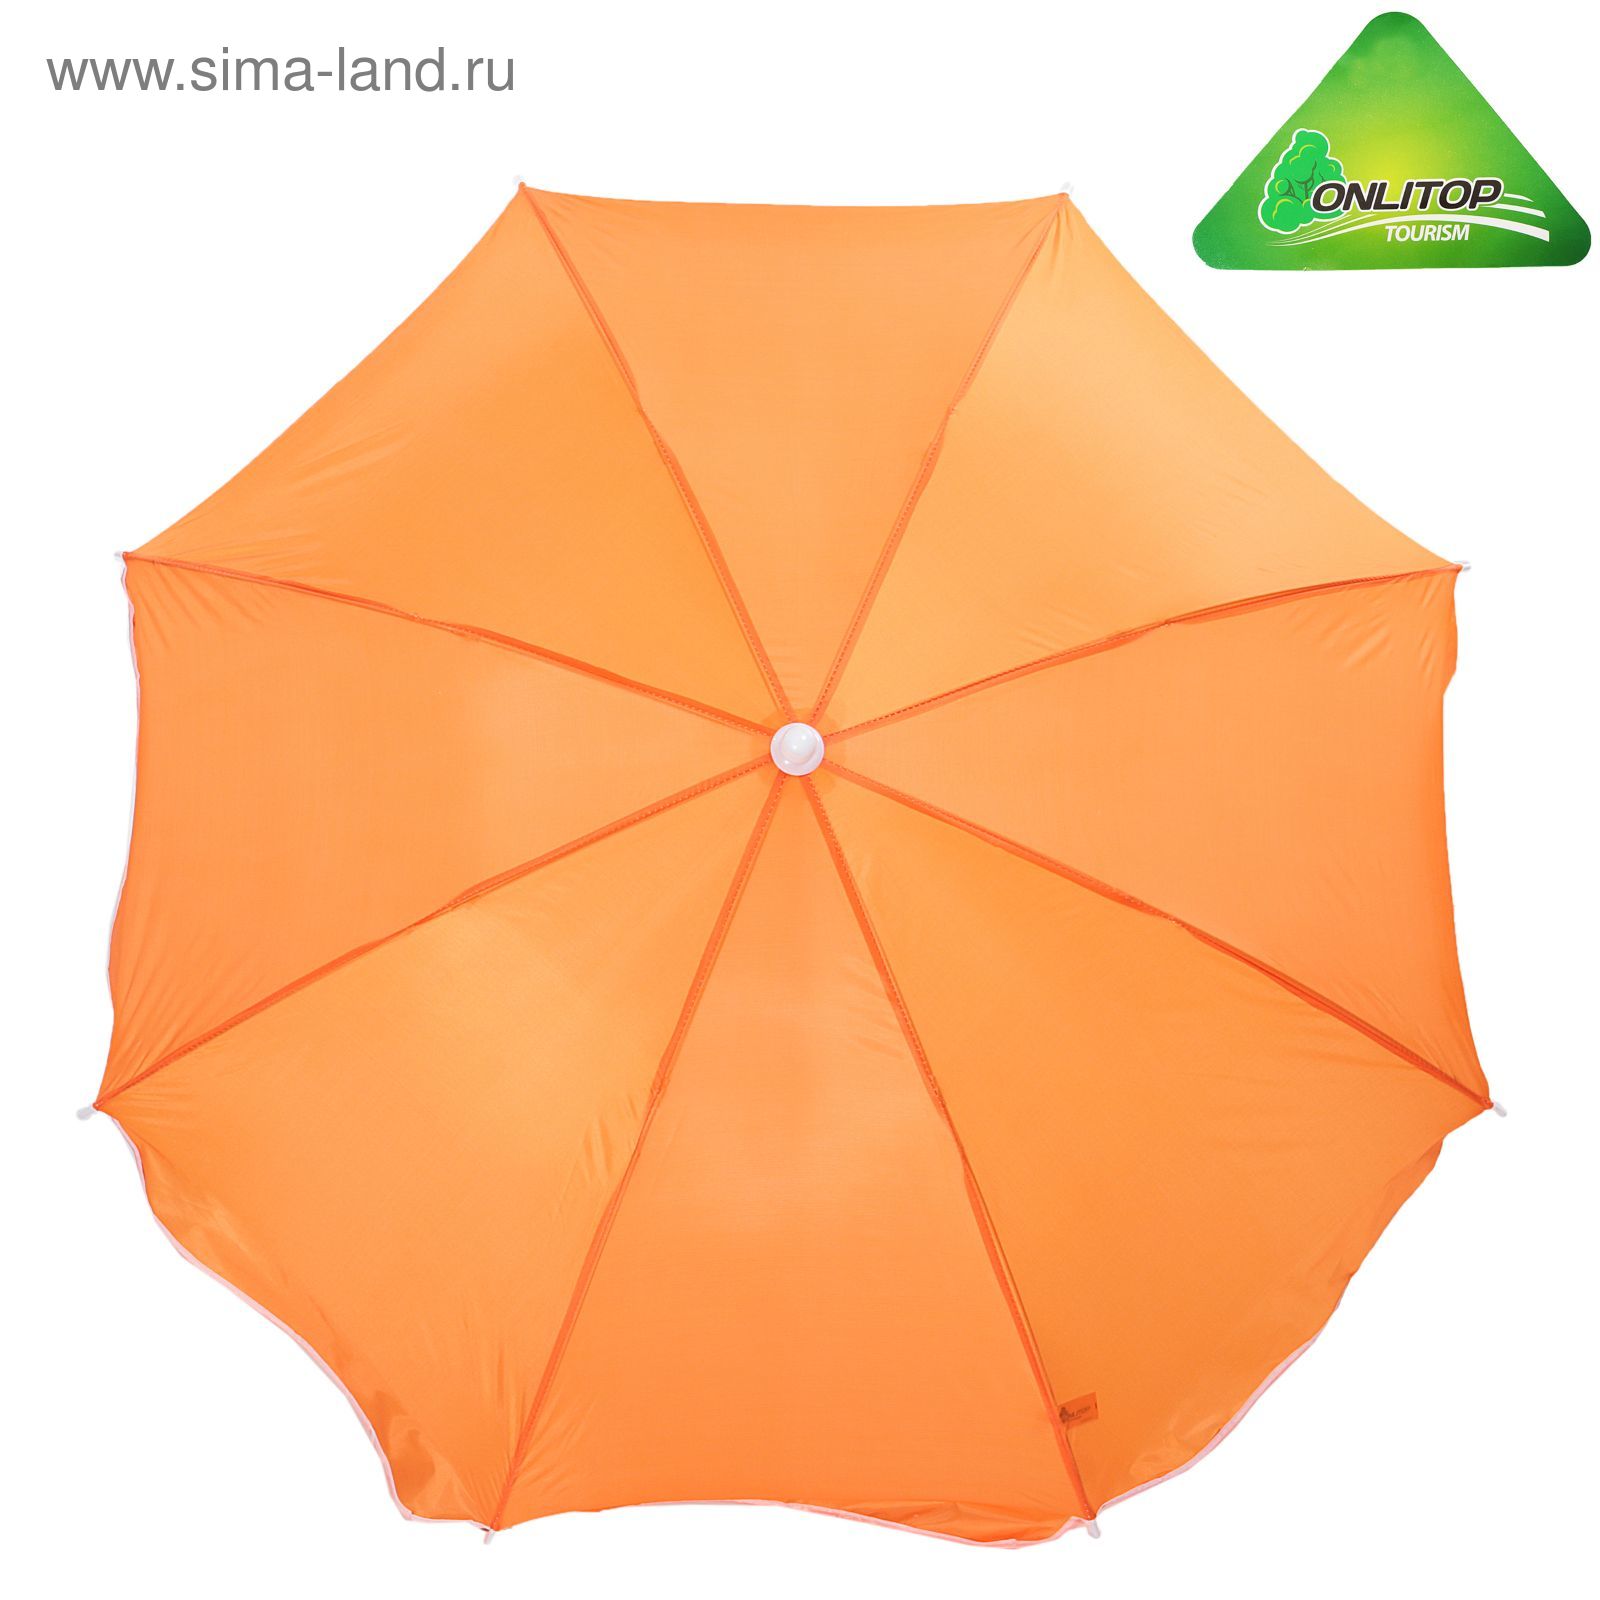 Зонт пляжный "Классика", d=210 cм, h=200 см, МИКС